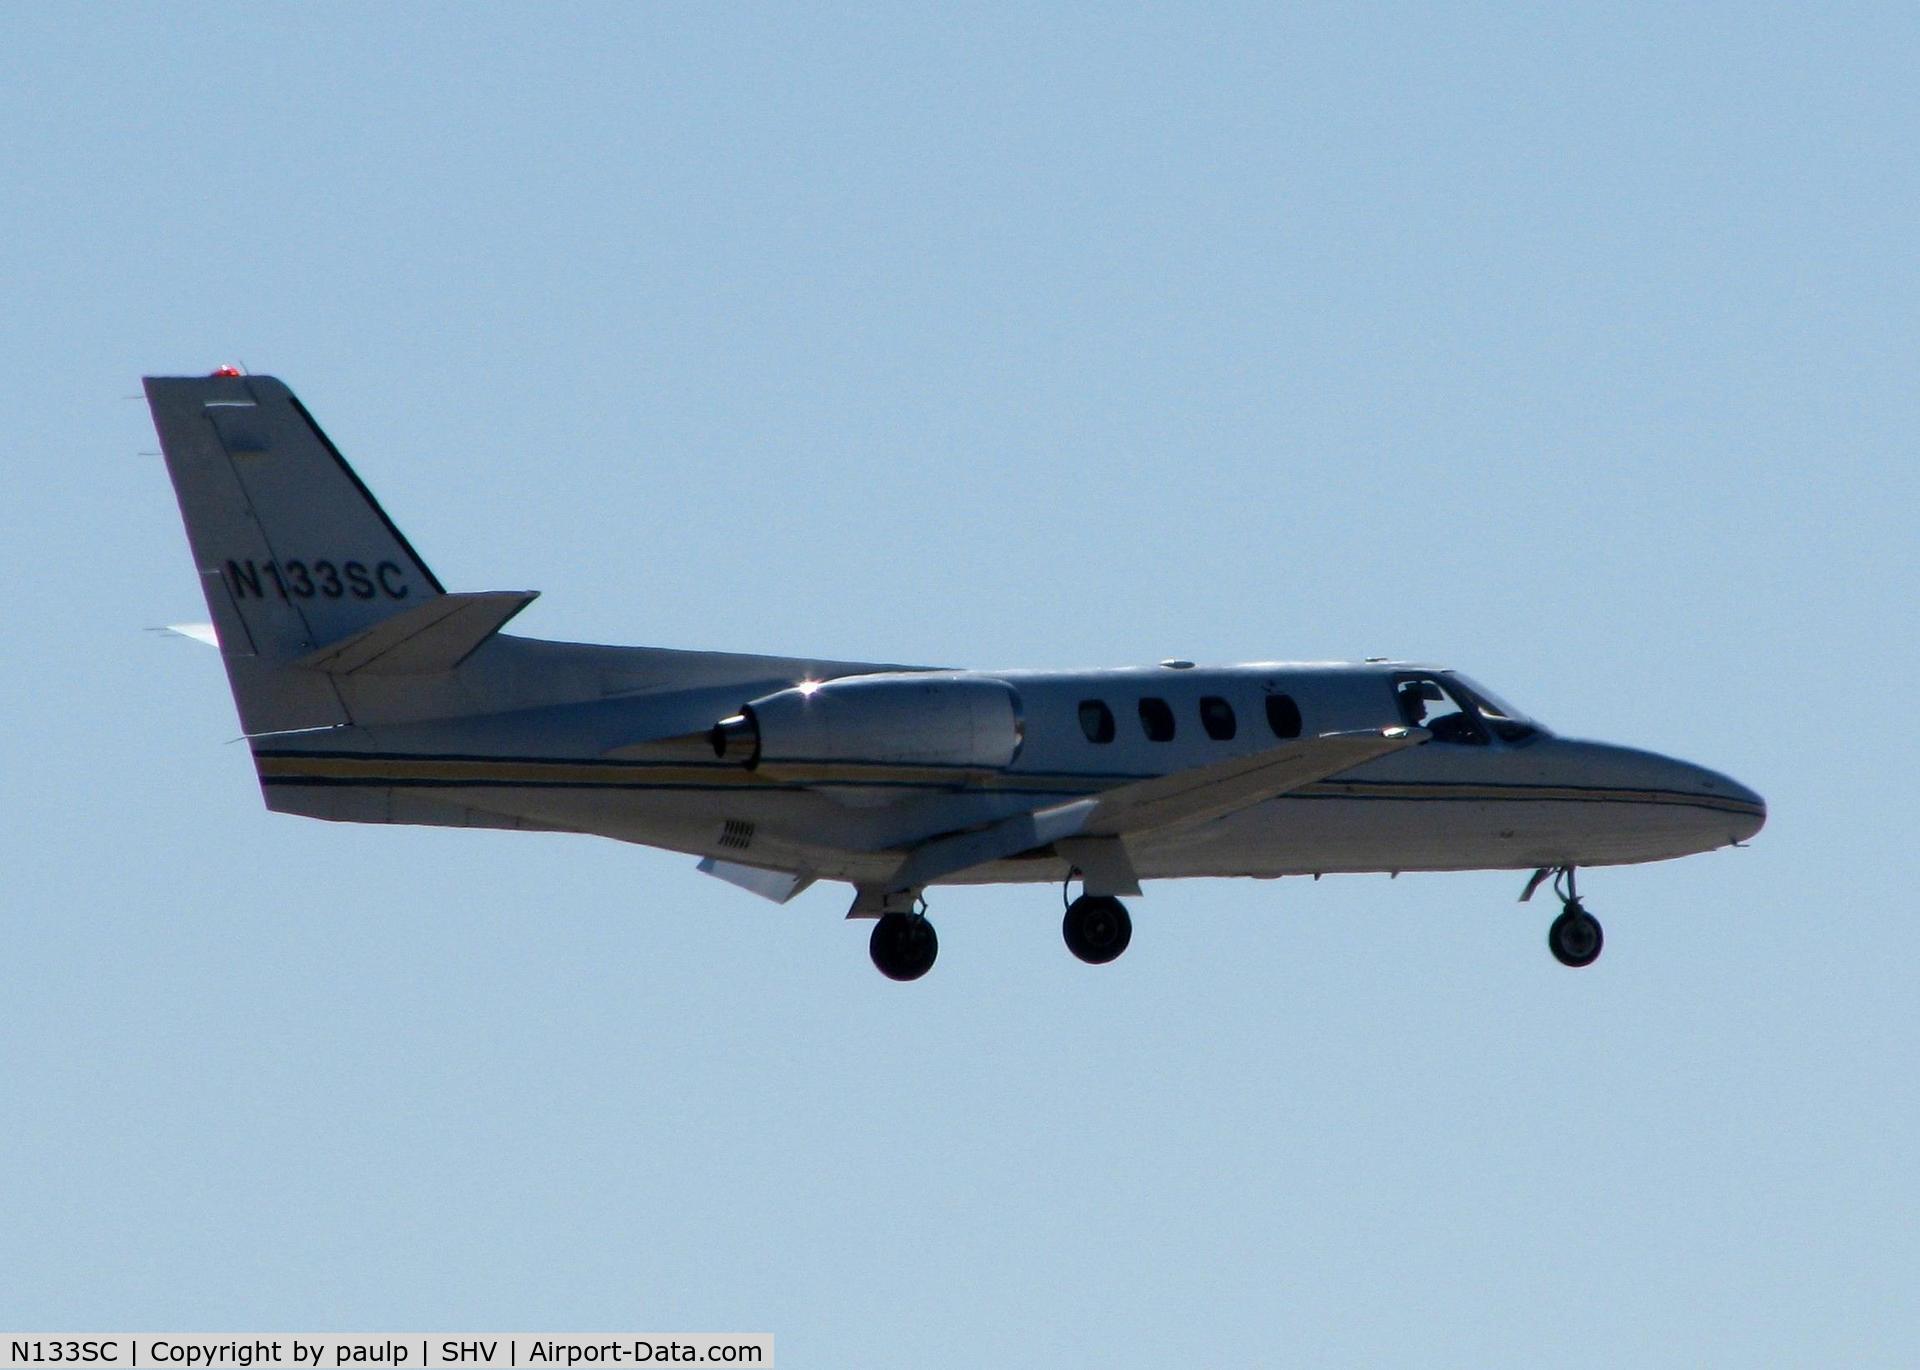 N133SC, 1979 Cessna 501 Citation I/SP C/N 501-0131, Landing on 23 at Shreveport Regional.